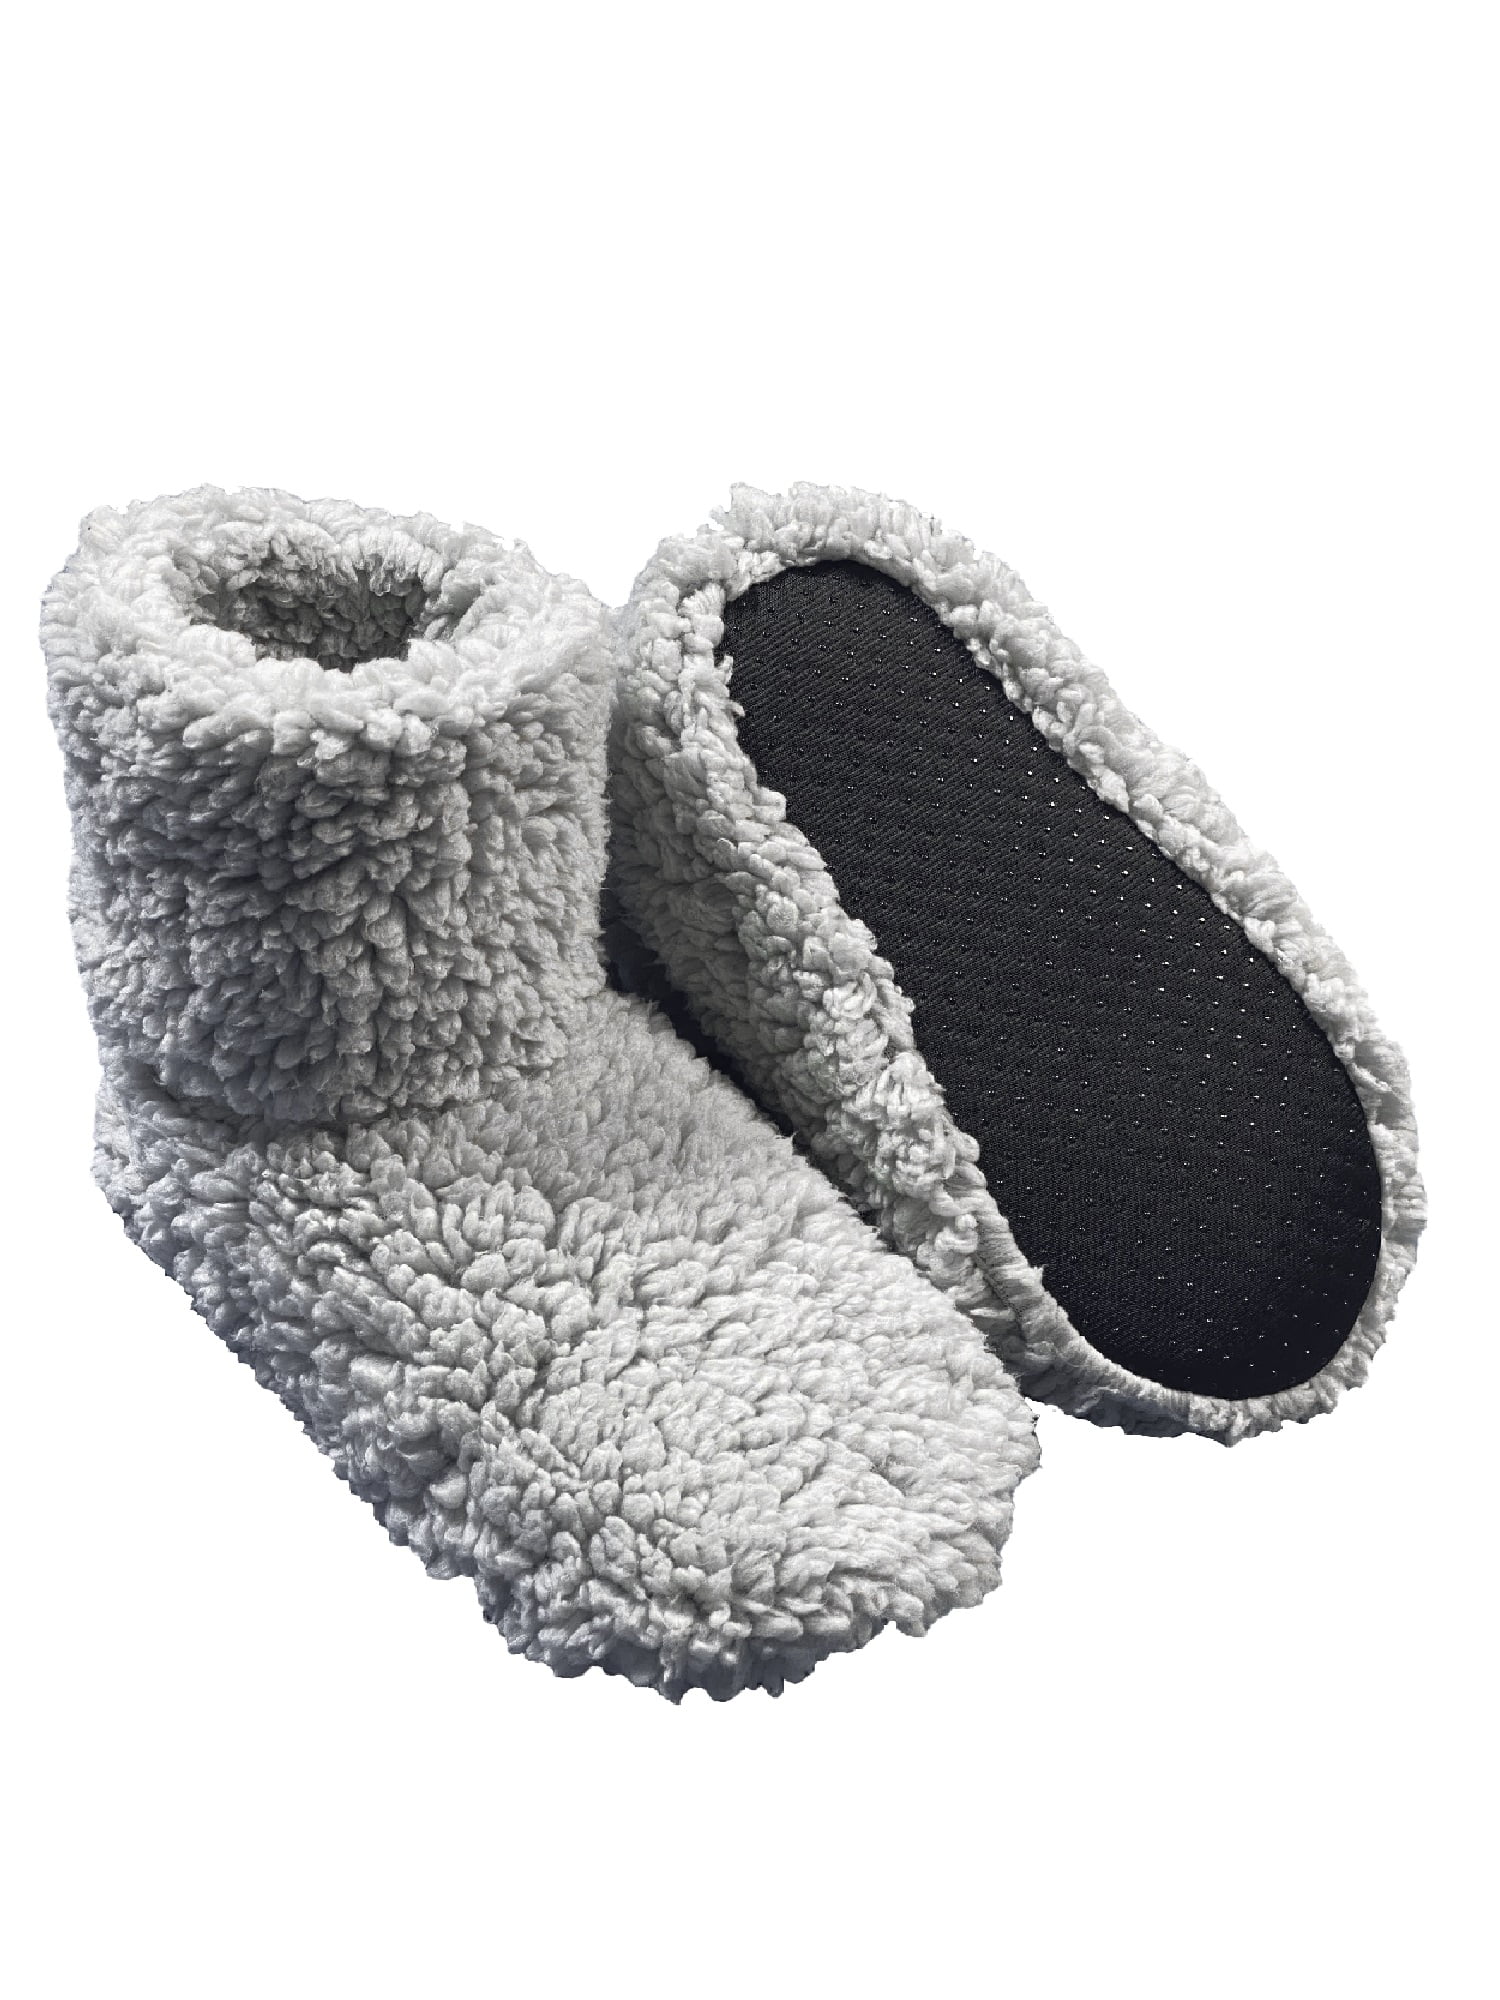 Fuzzy Babba, Women's Gray Bootie Slipper Socks, 1-Pack, Size S/M ...